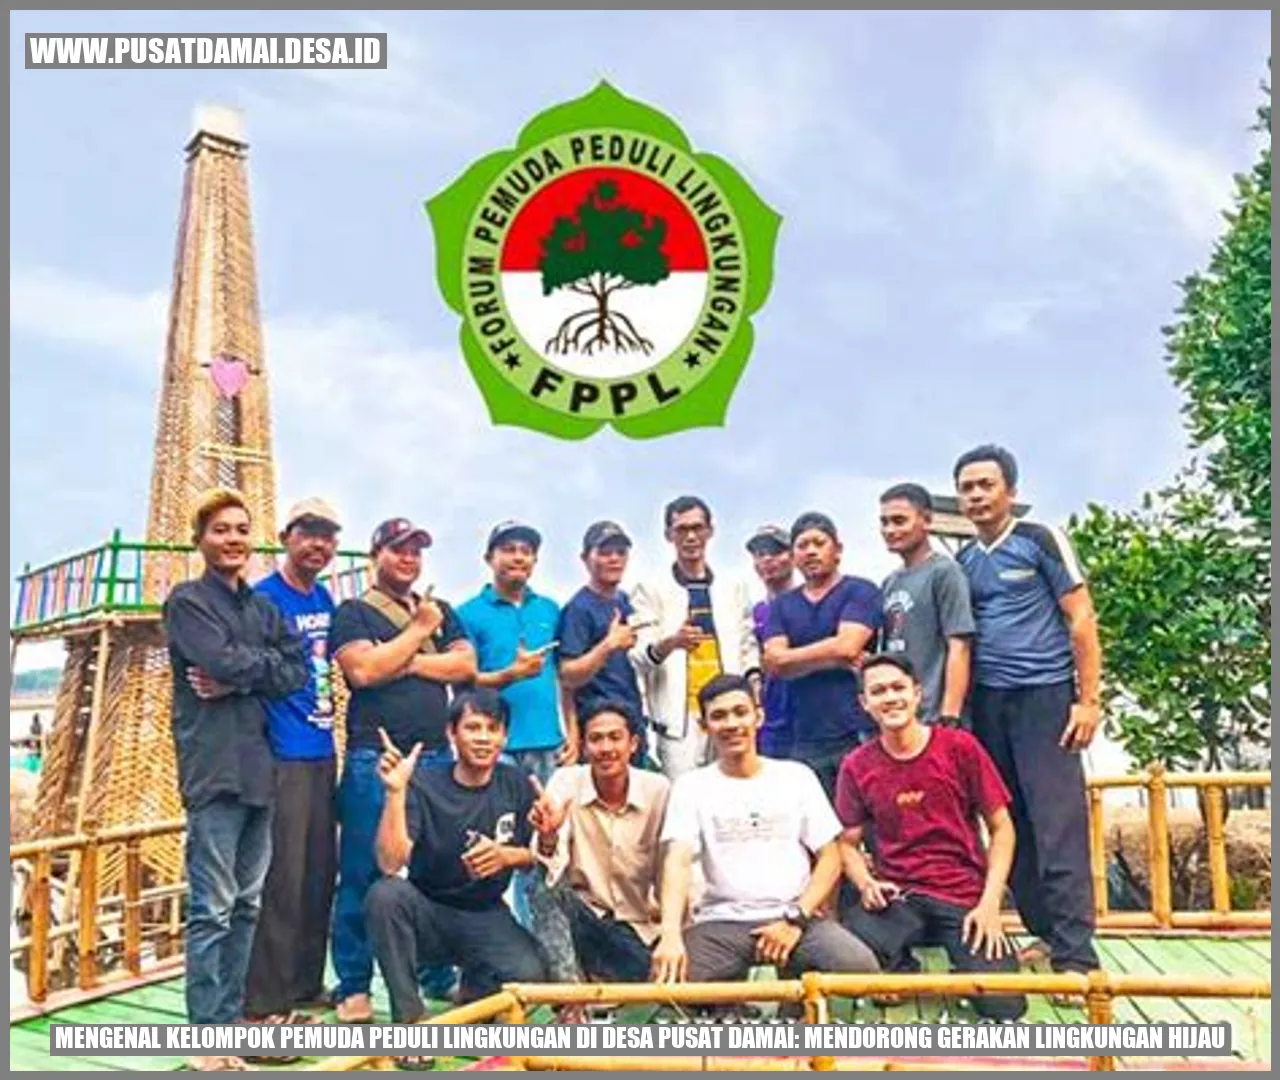 Kelompok Pemuda Peduli Lingkungan di Desa Pusat Damai